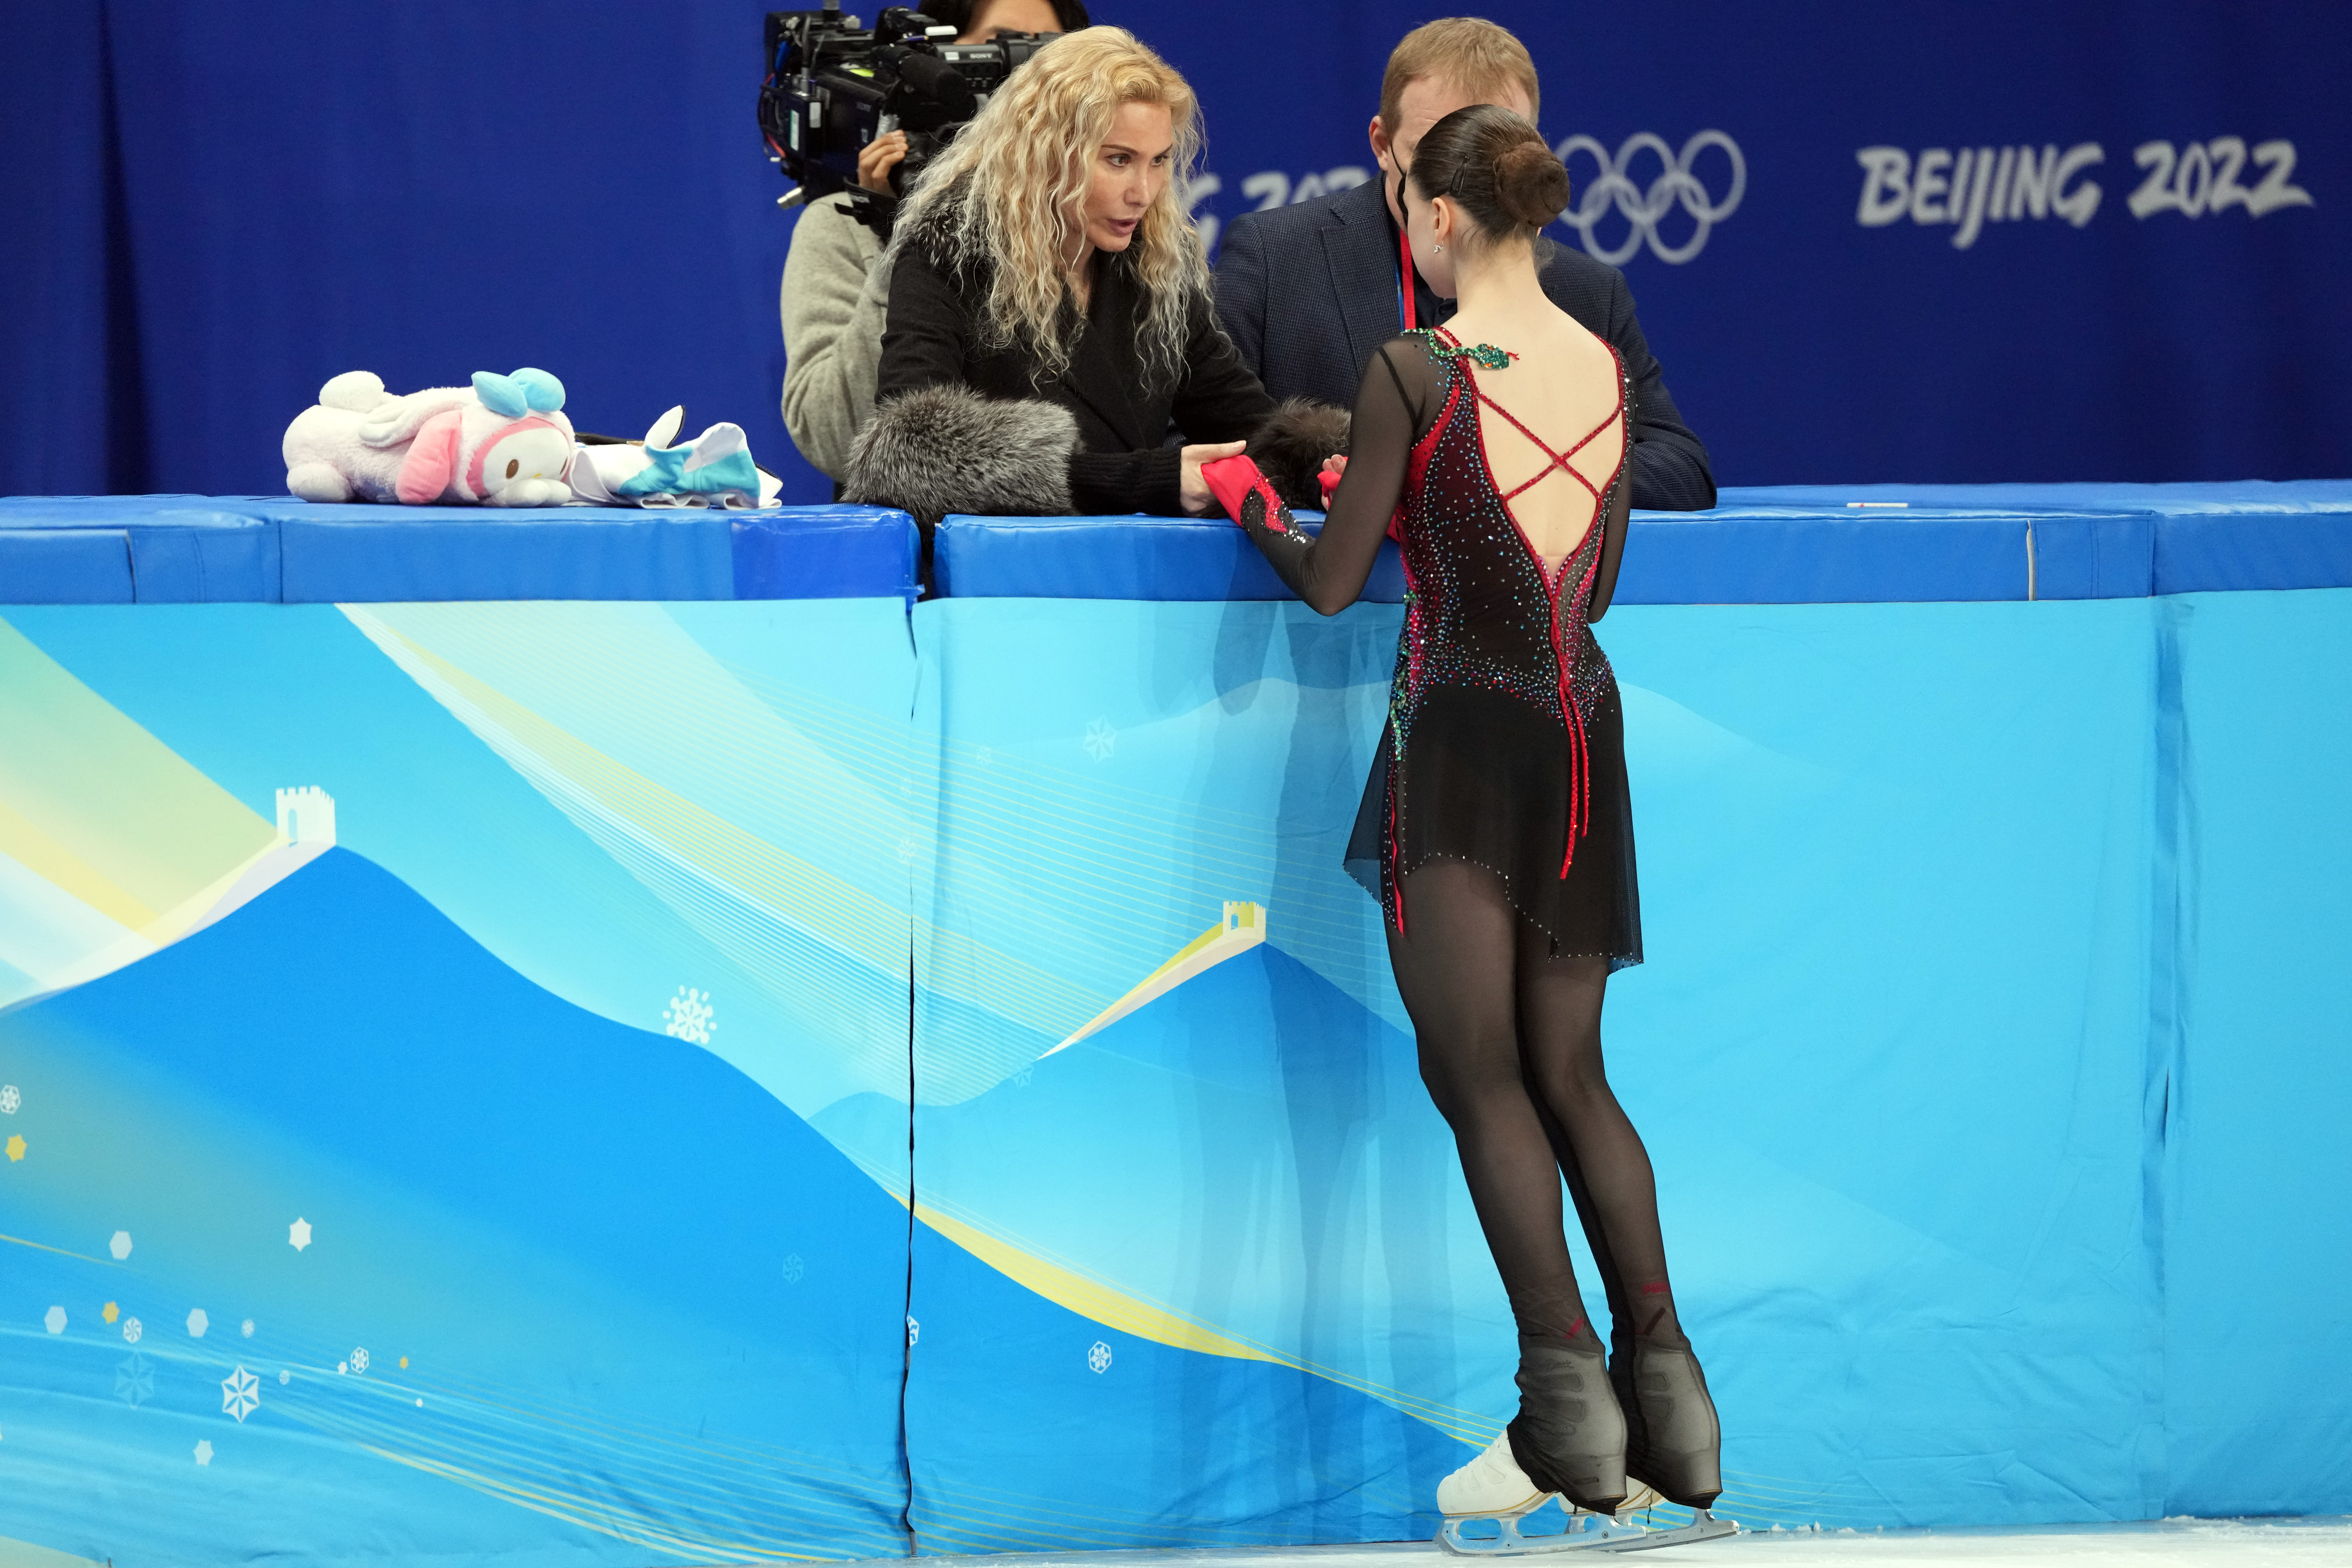 IOC president Thomas Bach rips Kamila Valieva's entourage for its  'tremendous coldness' - The Boston Globe